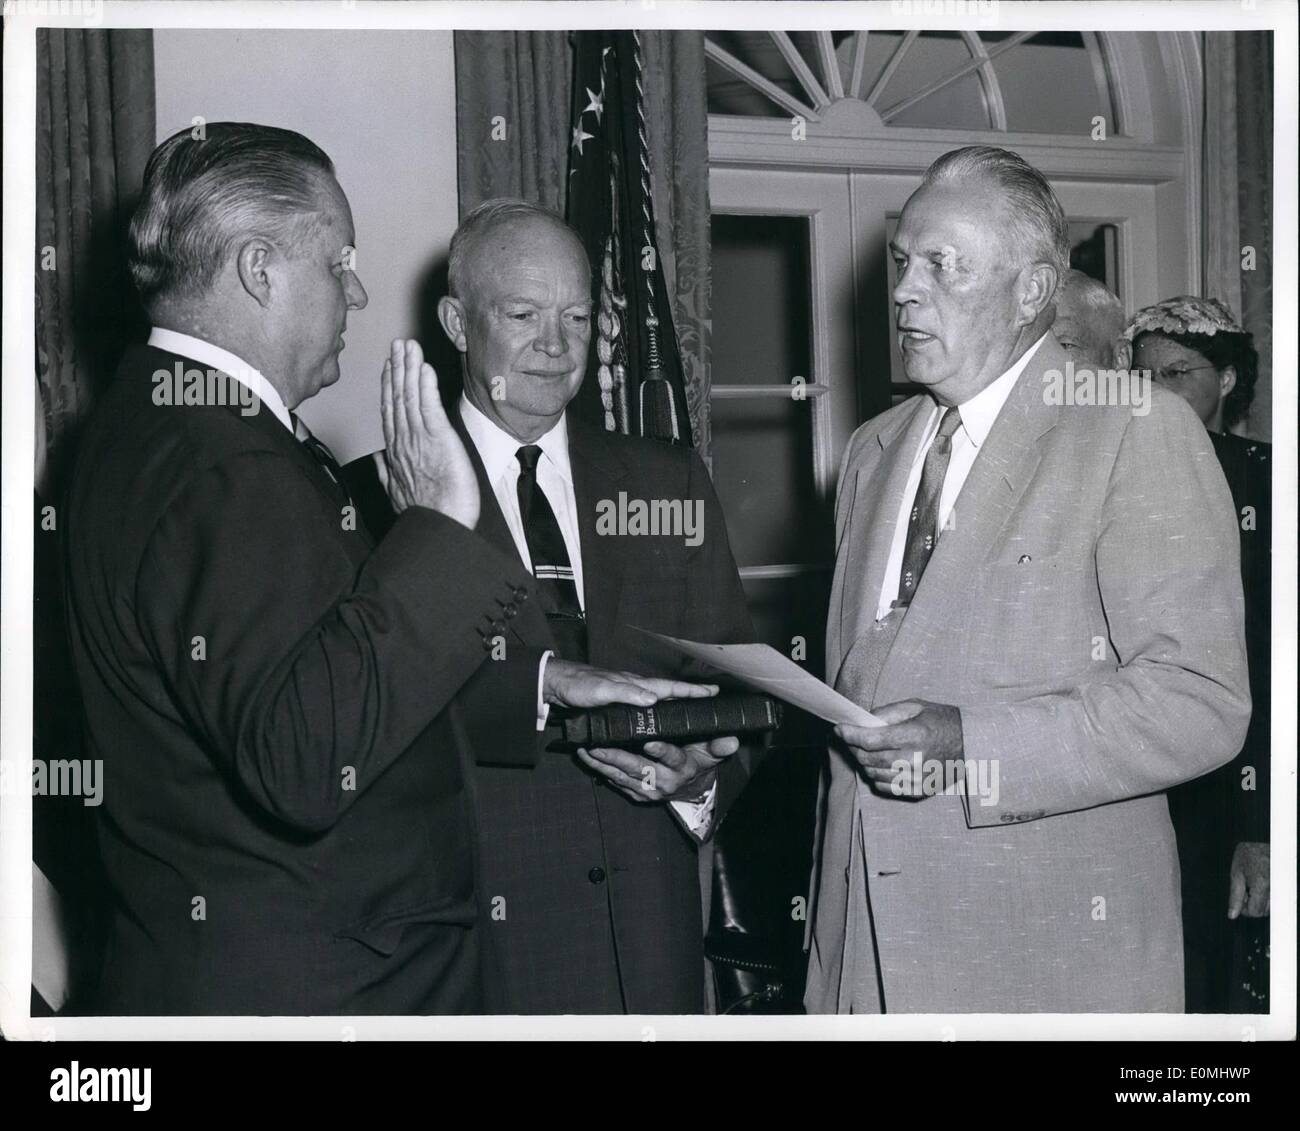 Agosto 08, 1955 - Ruben B. Robertson, Jr., (sinistra) è giurato come Vice segretario della difesa nel corso di una cerimonia alla Casa Bianca. Il sig. Frank K. Sanderson, funzionario amministrativo per la Casa Bianca (a destra), amministra il giuramento come Presidente Eisenhower guarda a. Foto Stock